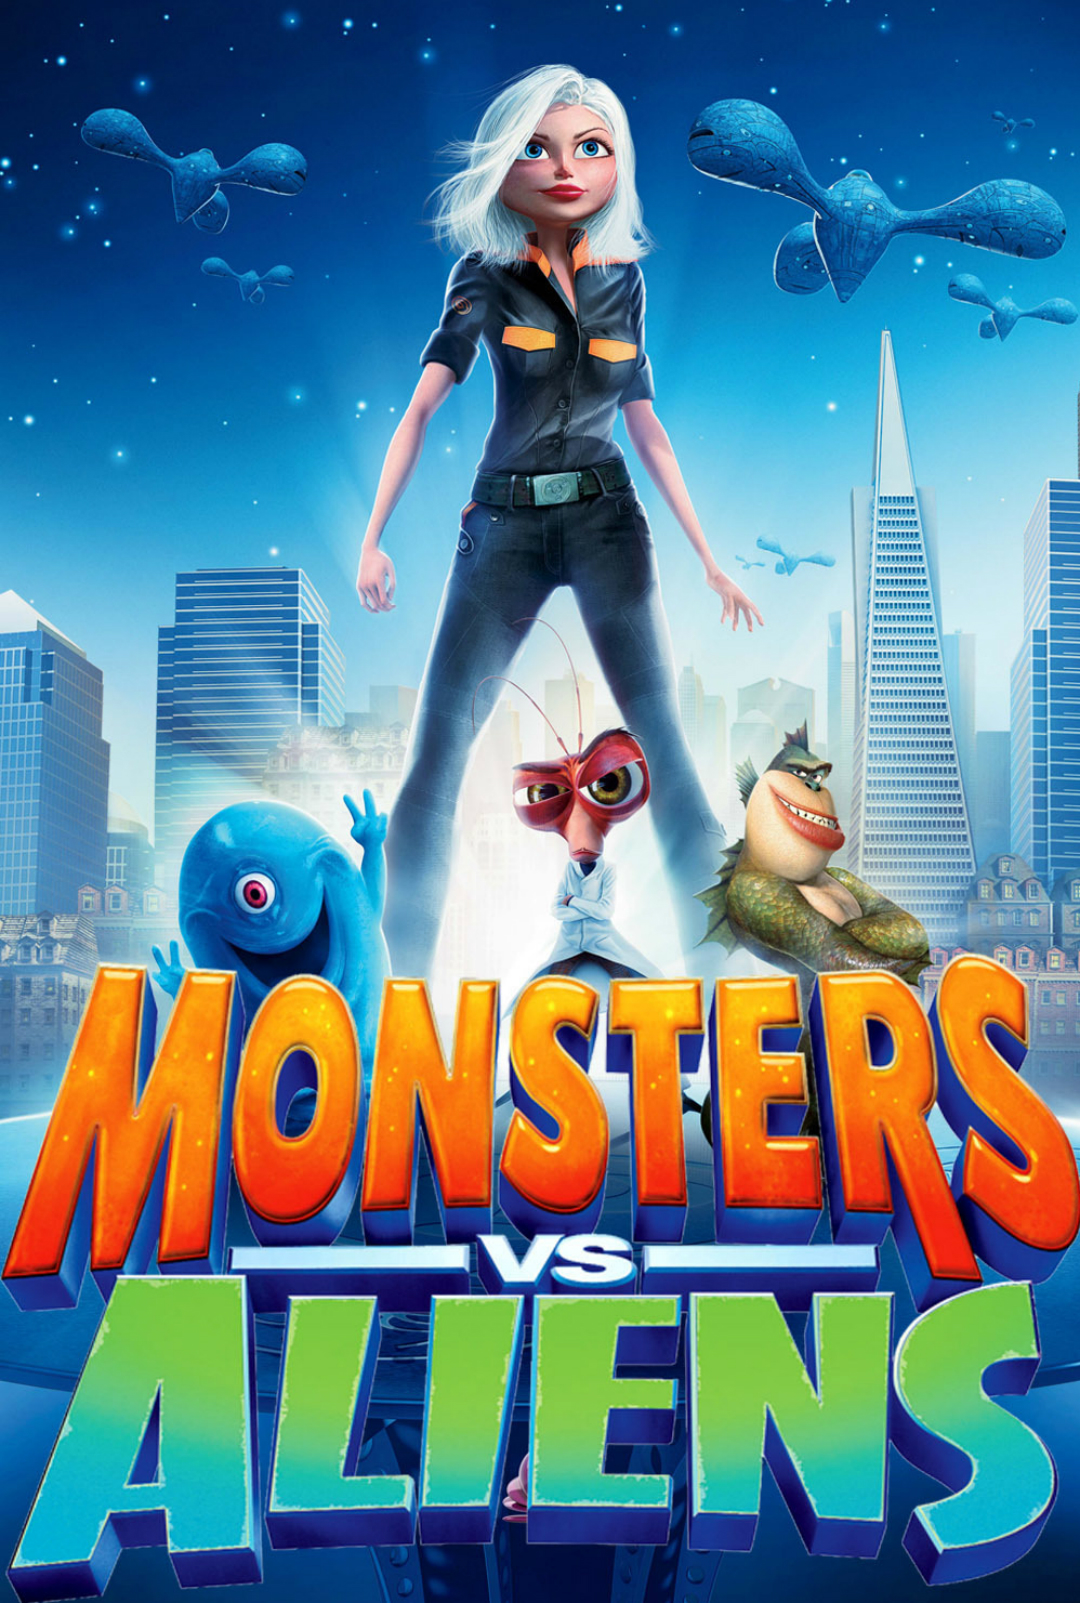 Monsters Vs Aliens Backgrounds, Compatible - PC, Mobile, Gadgets| 1080x1603 px